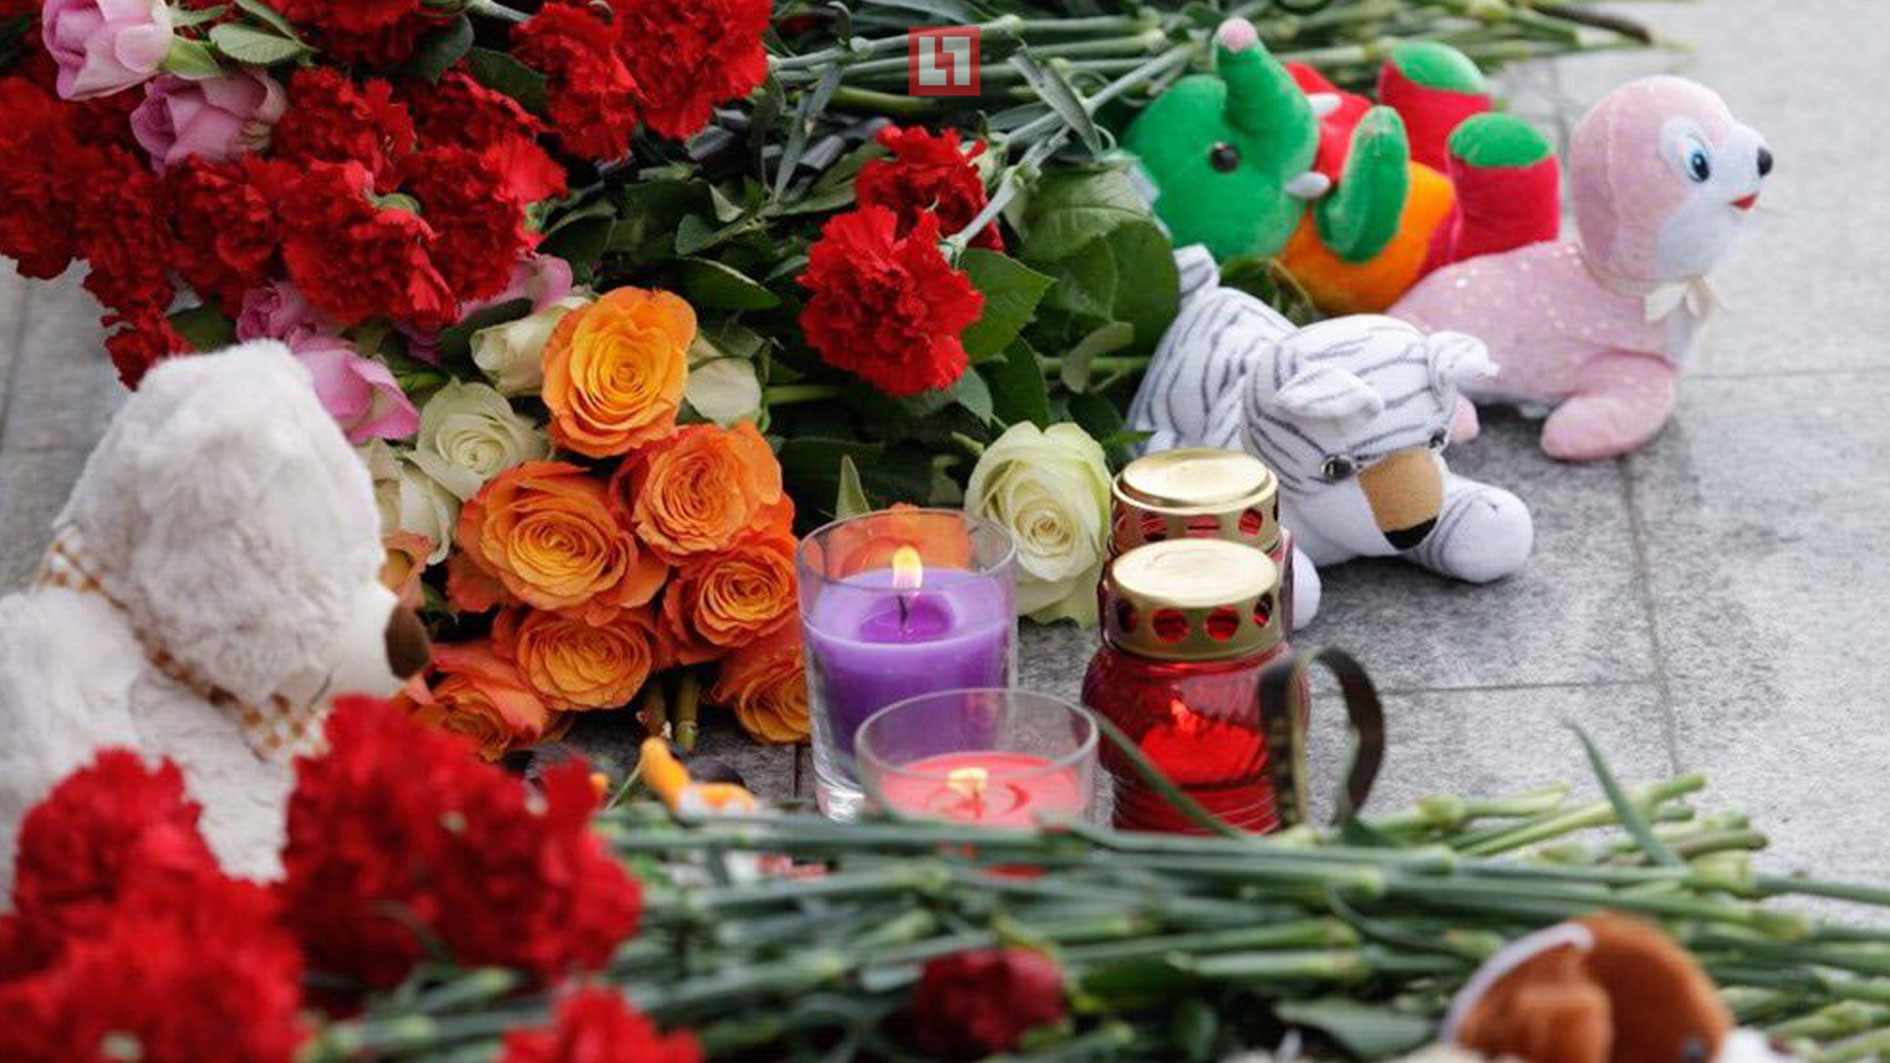 Тула, акция памяти жертв пожара в Кемерове. Фото: ©L!FE